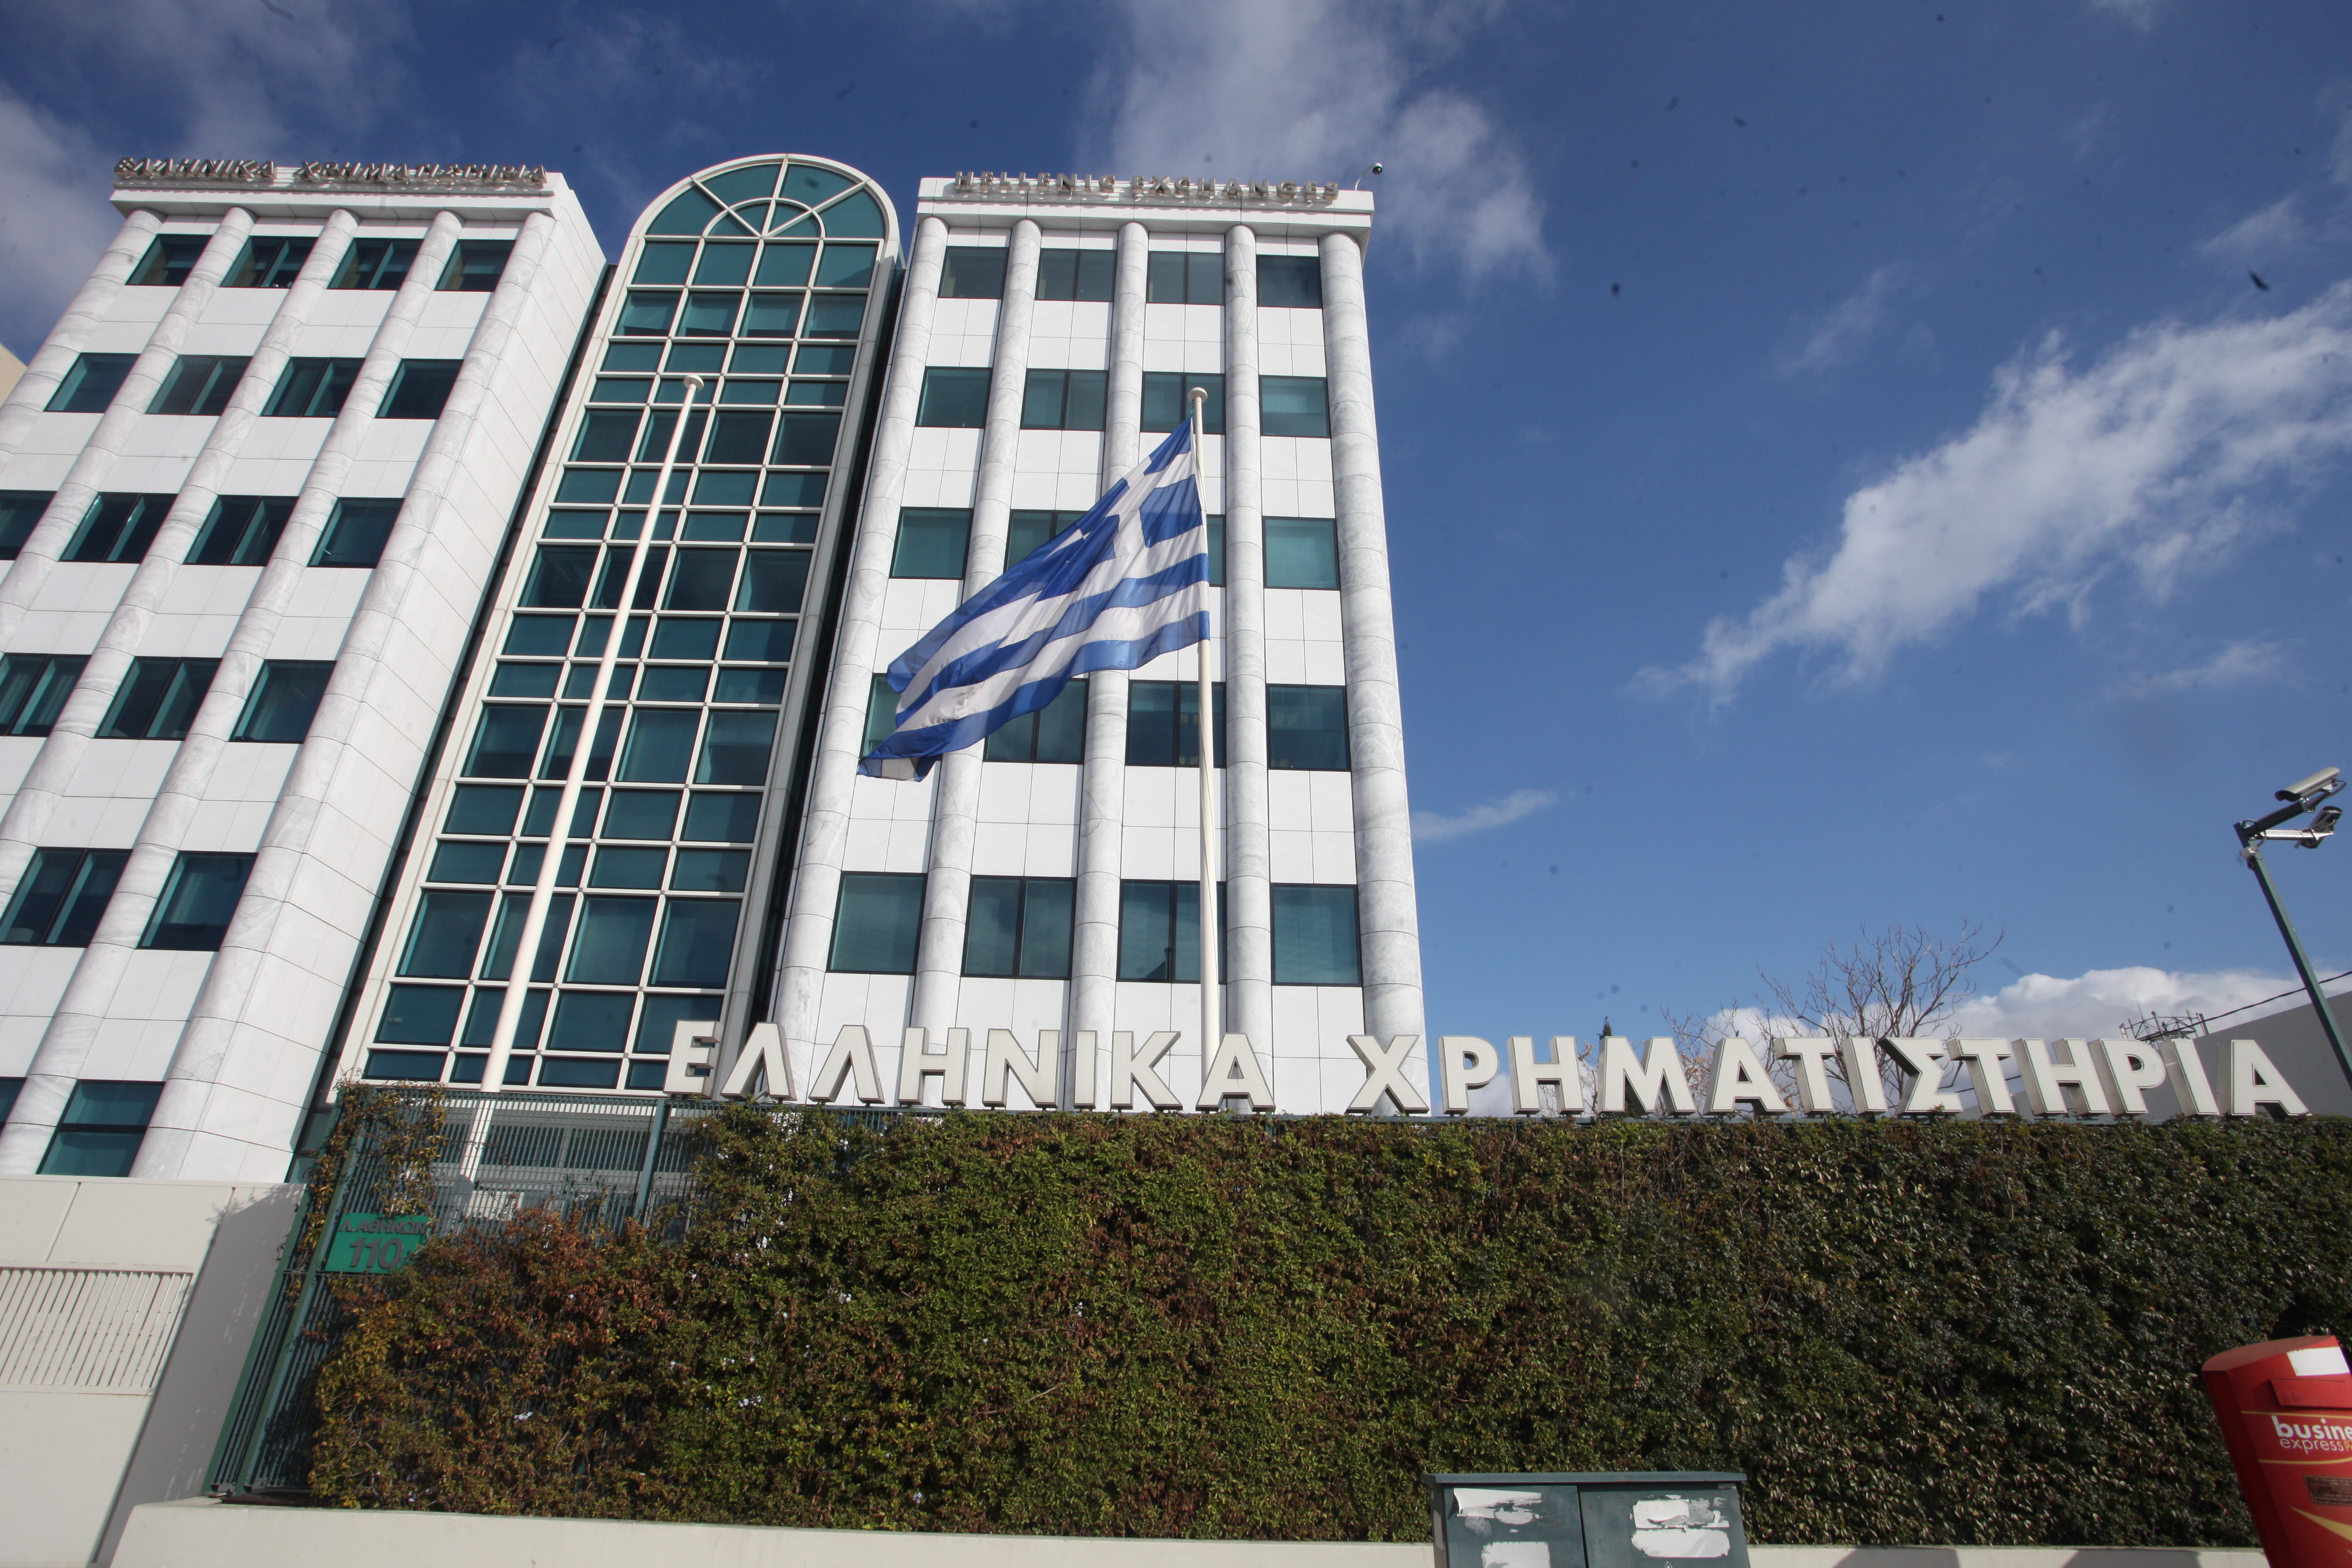 Με άνοδο 2,61% έκλεισε το Χρηματιστήριο Αθηνών την Μ. Τετάρτη